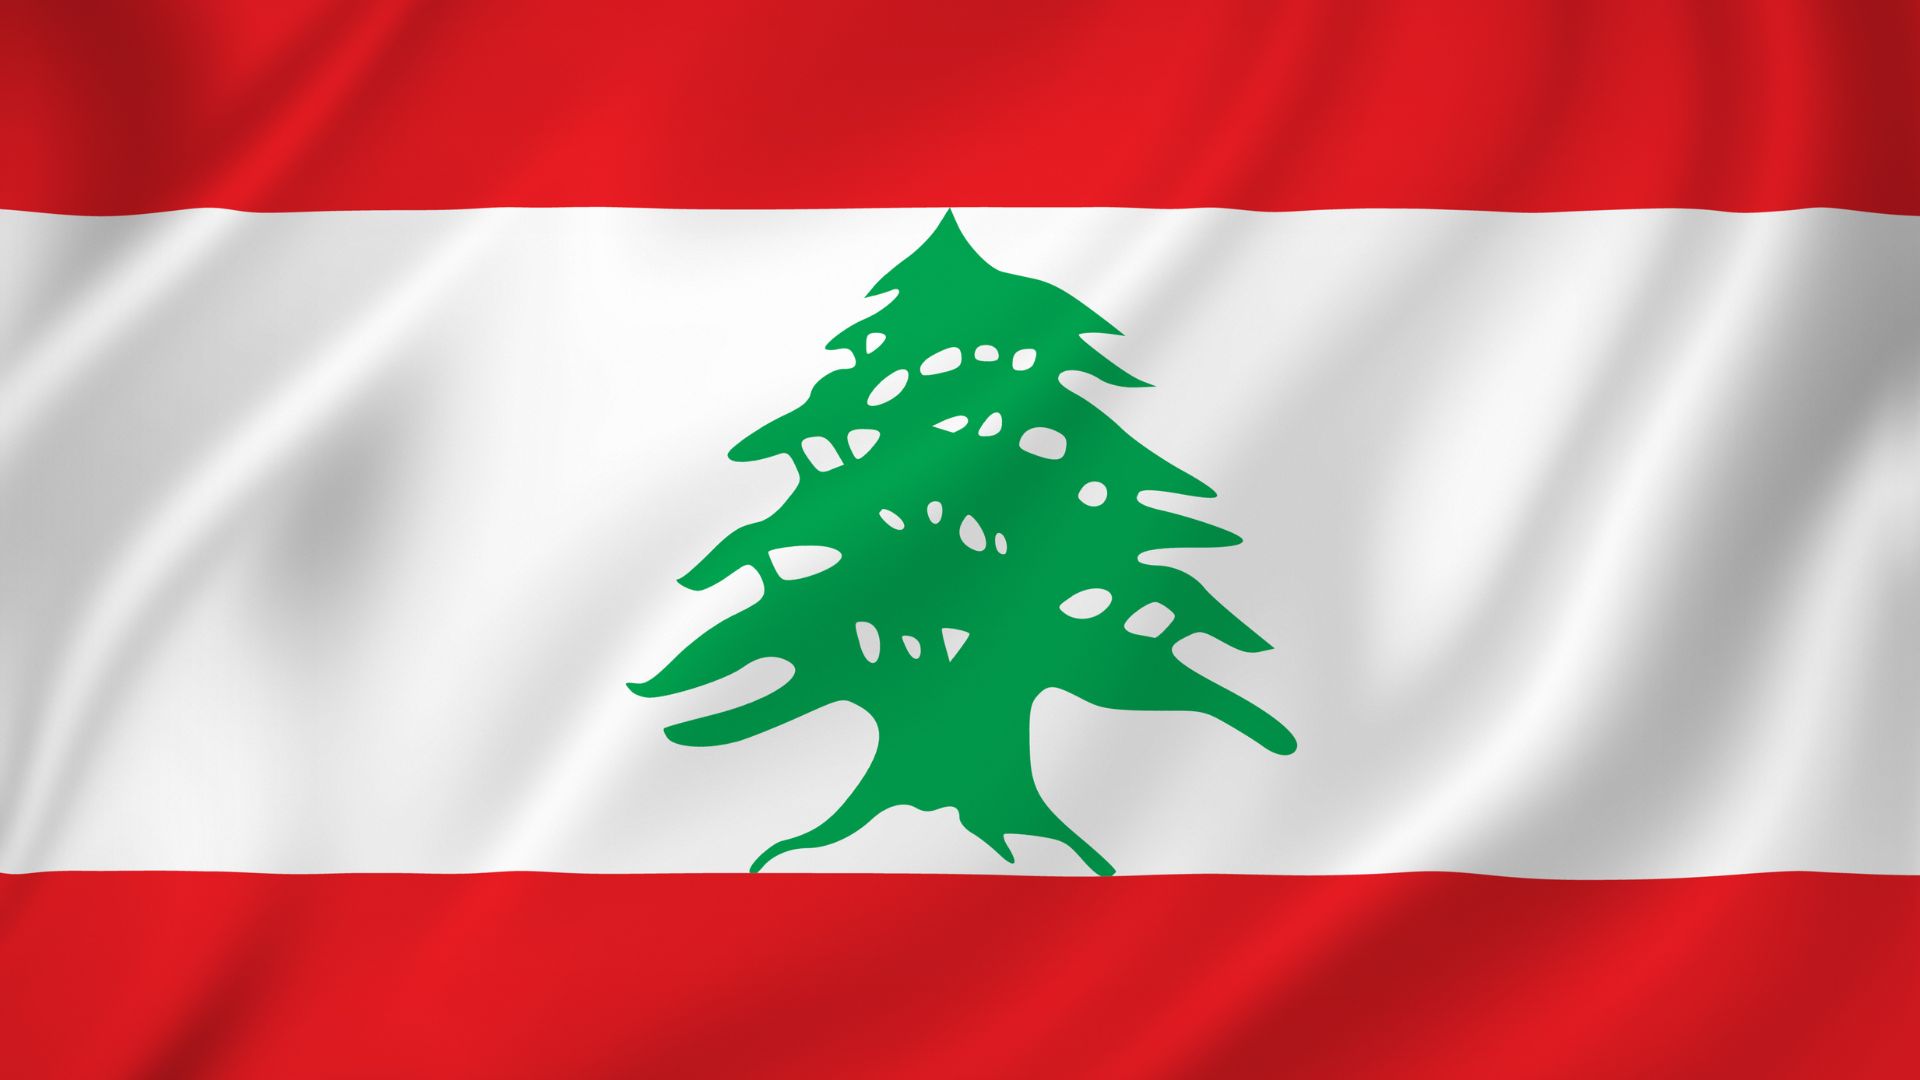 A bandeira do Líbano é constituída por três cores: vermelho, branco e verde que representa a árvore de cedro localizada no centro da mesma.